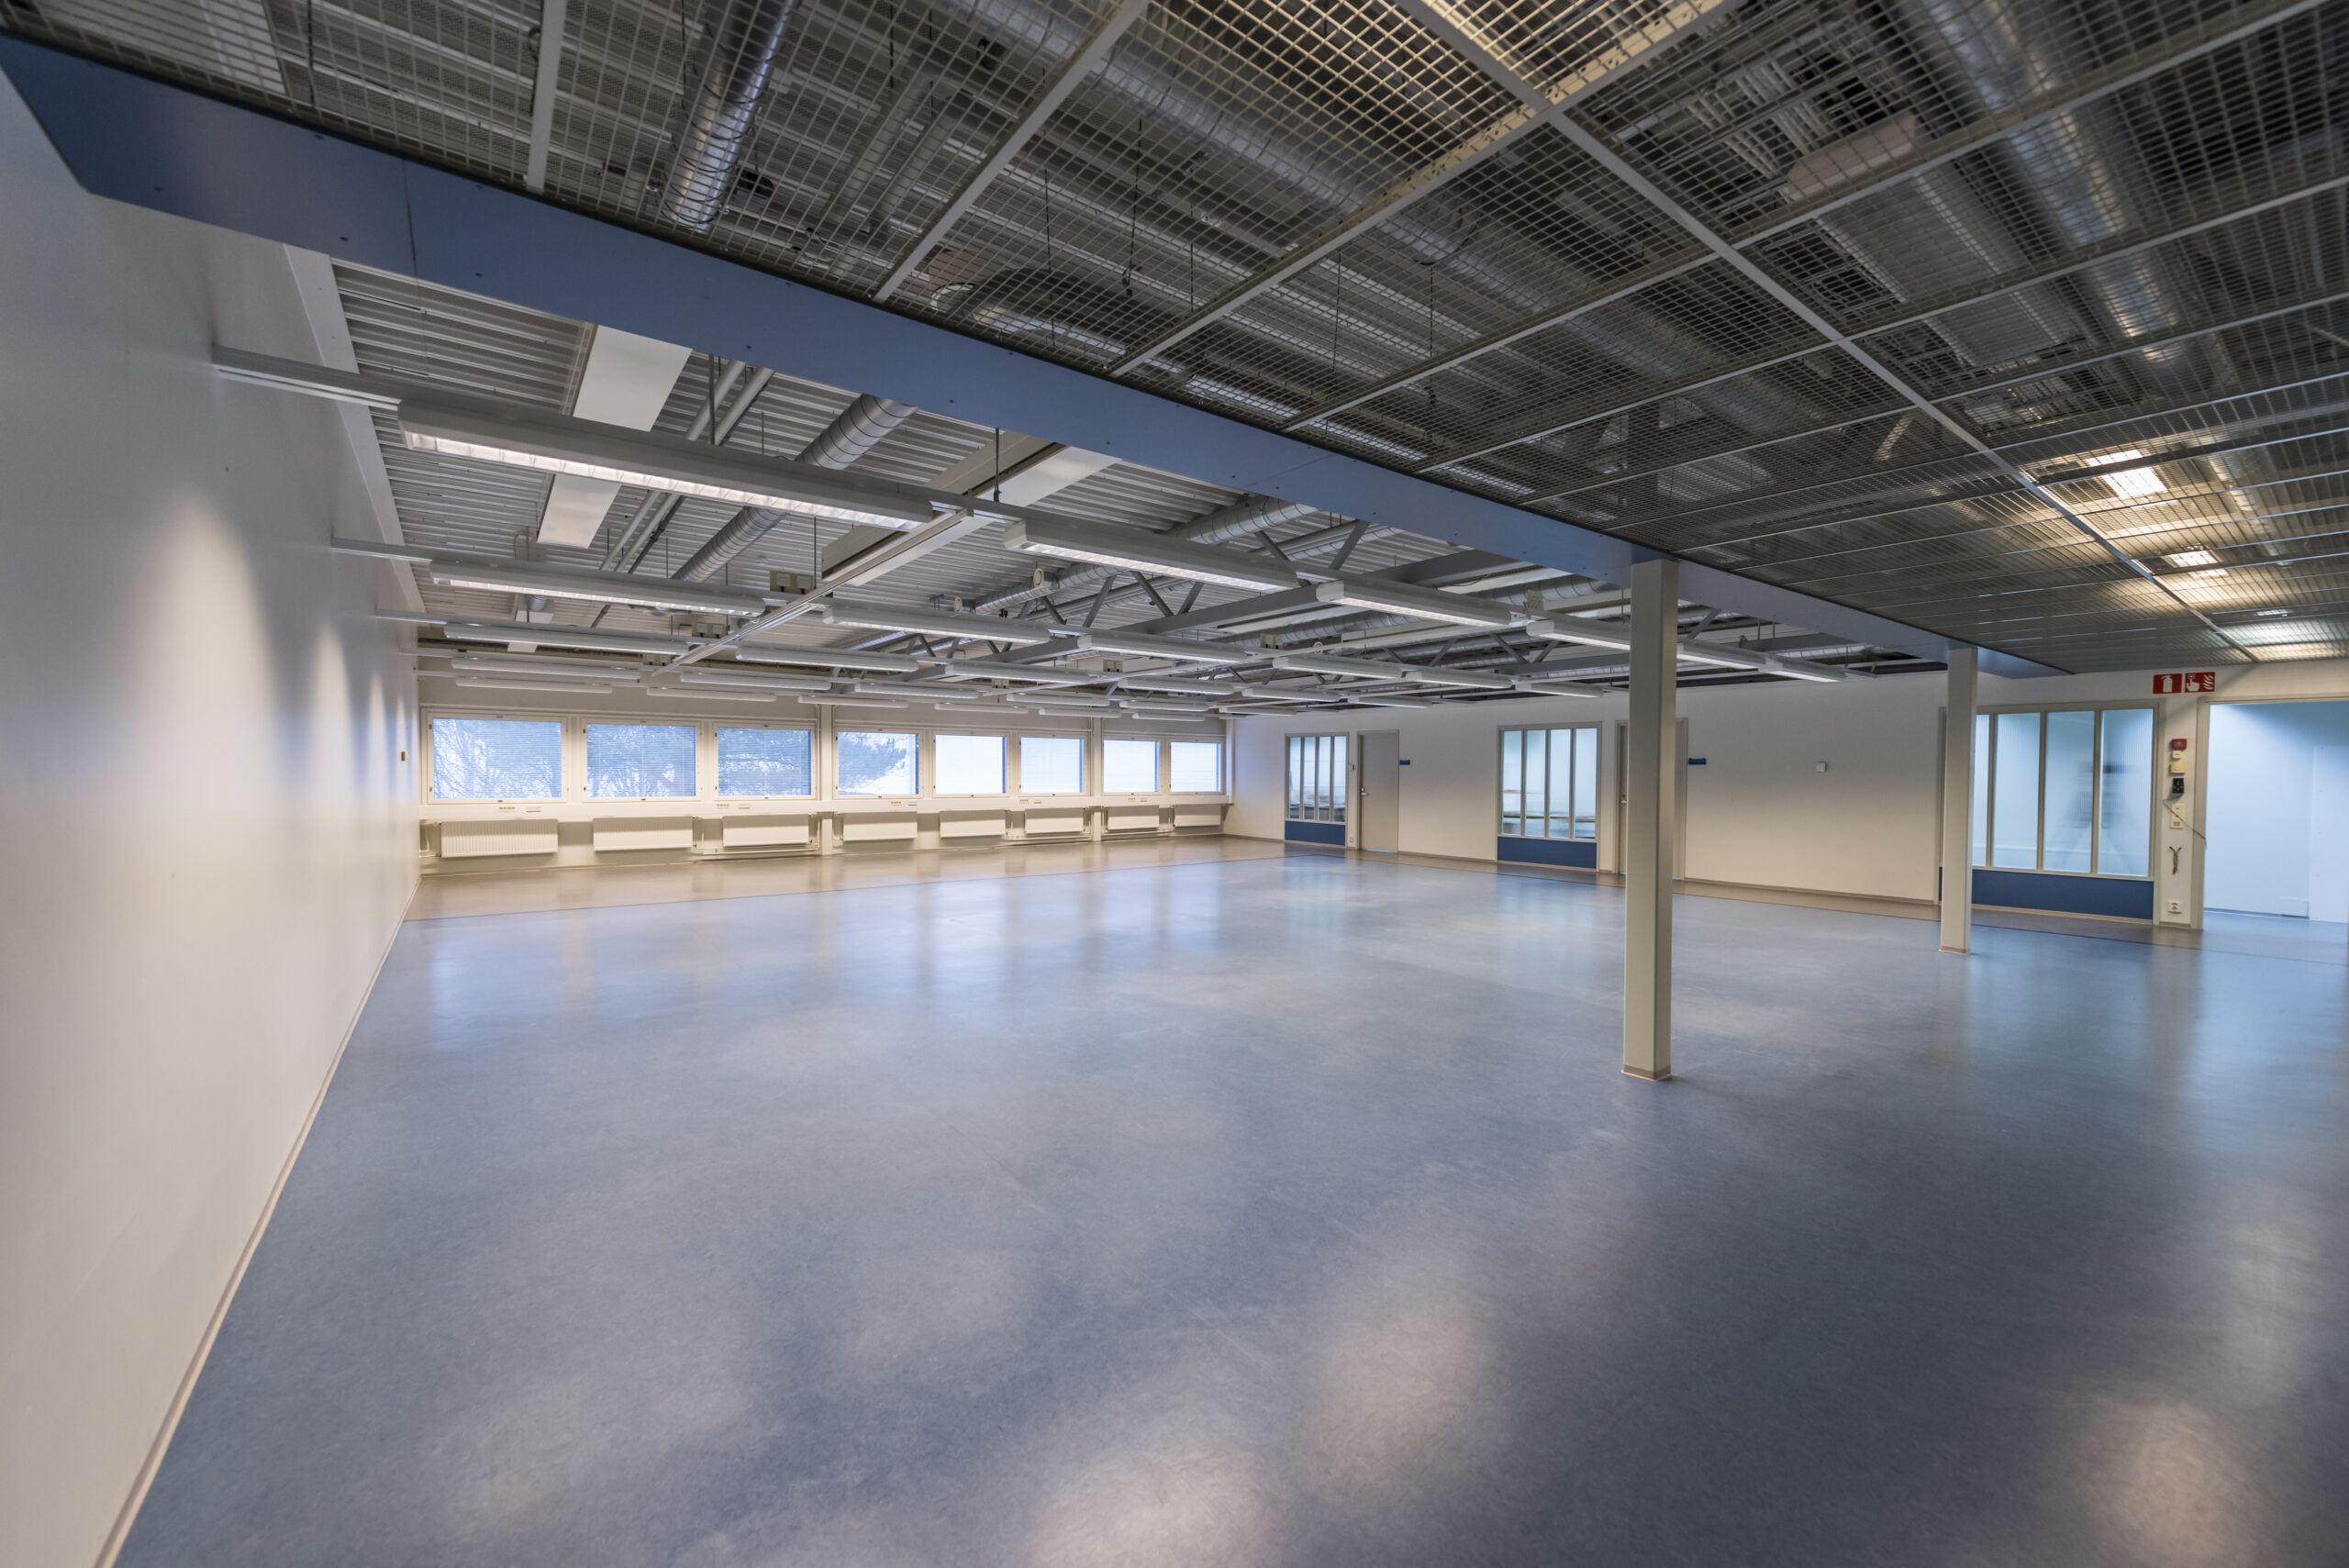 Tyhjä tuotantotila, sininen muovipintainen lattia, katossa putkistoja ja teräsrakenteita. Paljon ikkunapinta-alaa.